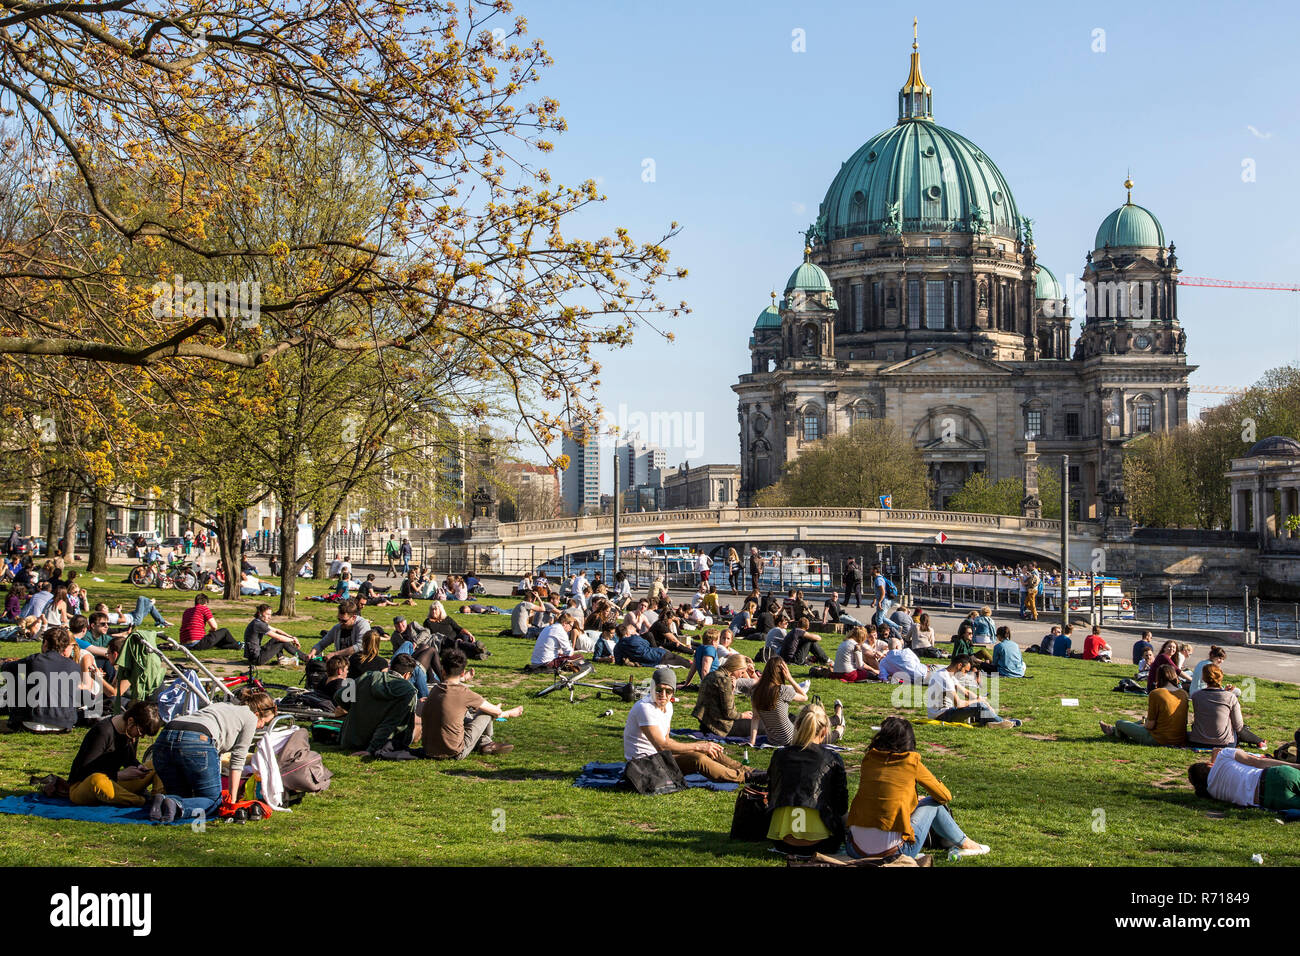 Le printemps à Berlin, Mitte, à côté de la Spree, Simon James Park, la cathédrale de Berlin, Berlin, Allemagne Banque D'Images